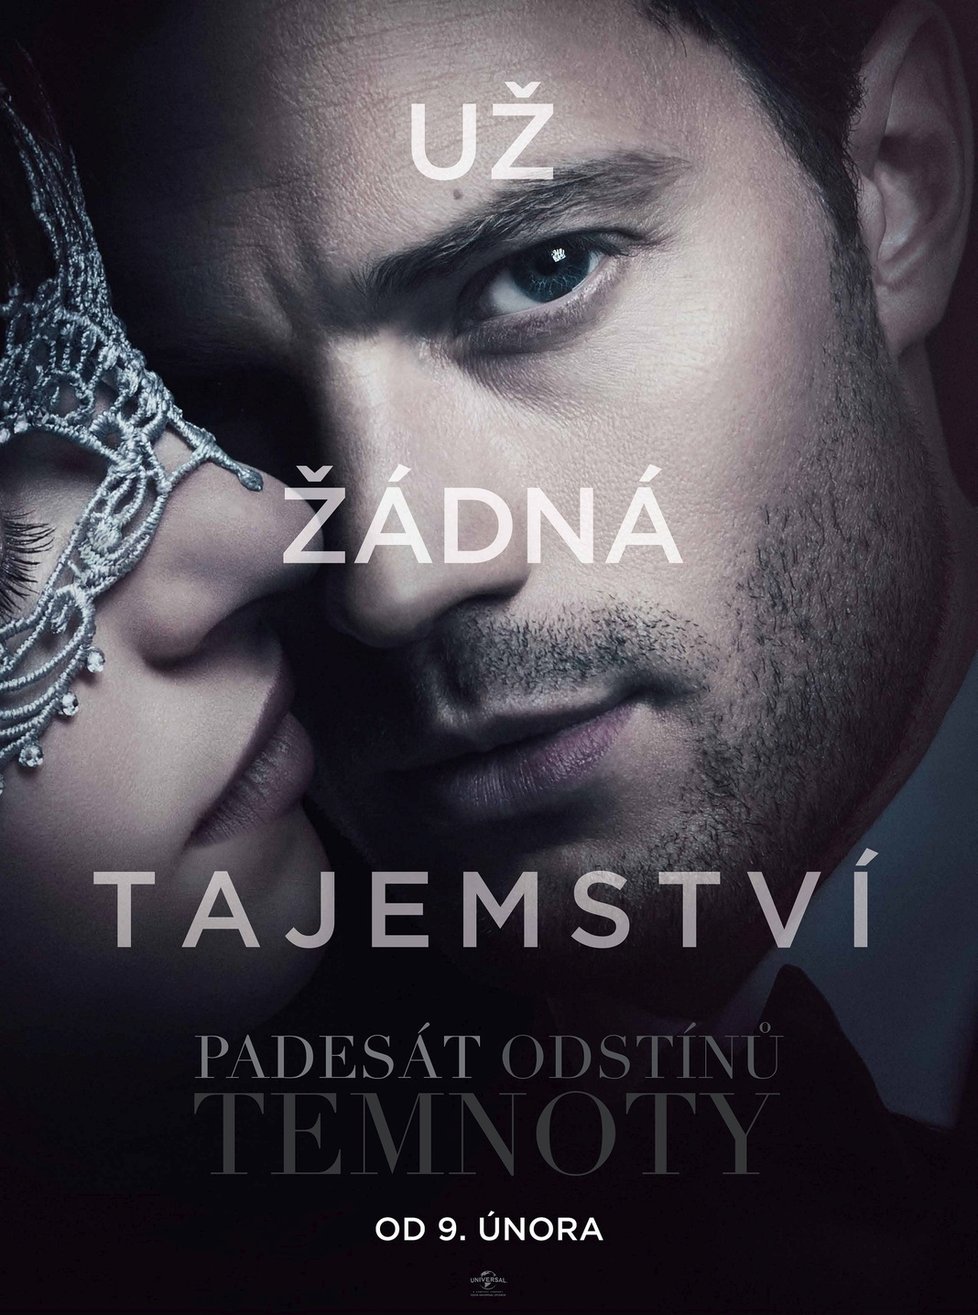 Snímek Padesát odstínů temnoty měl českou premiéru 9. února, na nosičích se vrací o 13 minut žhavější od 14. června.